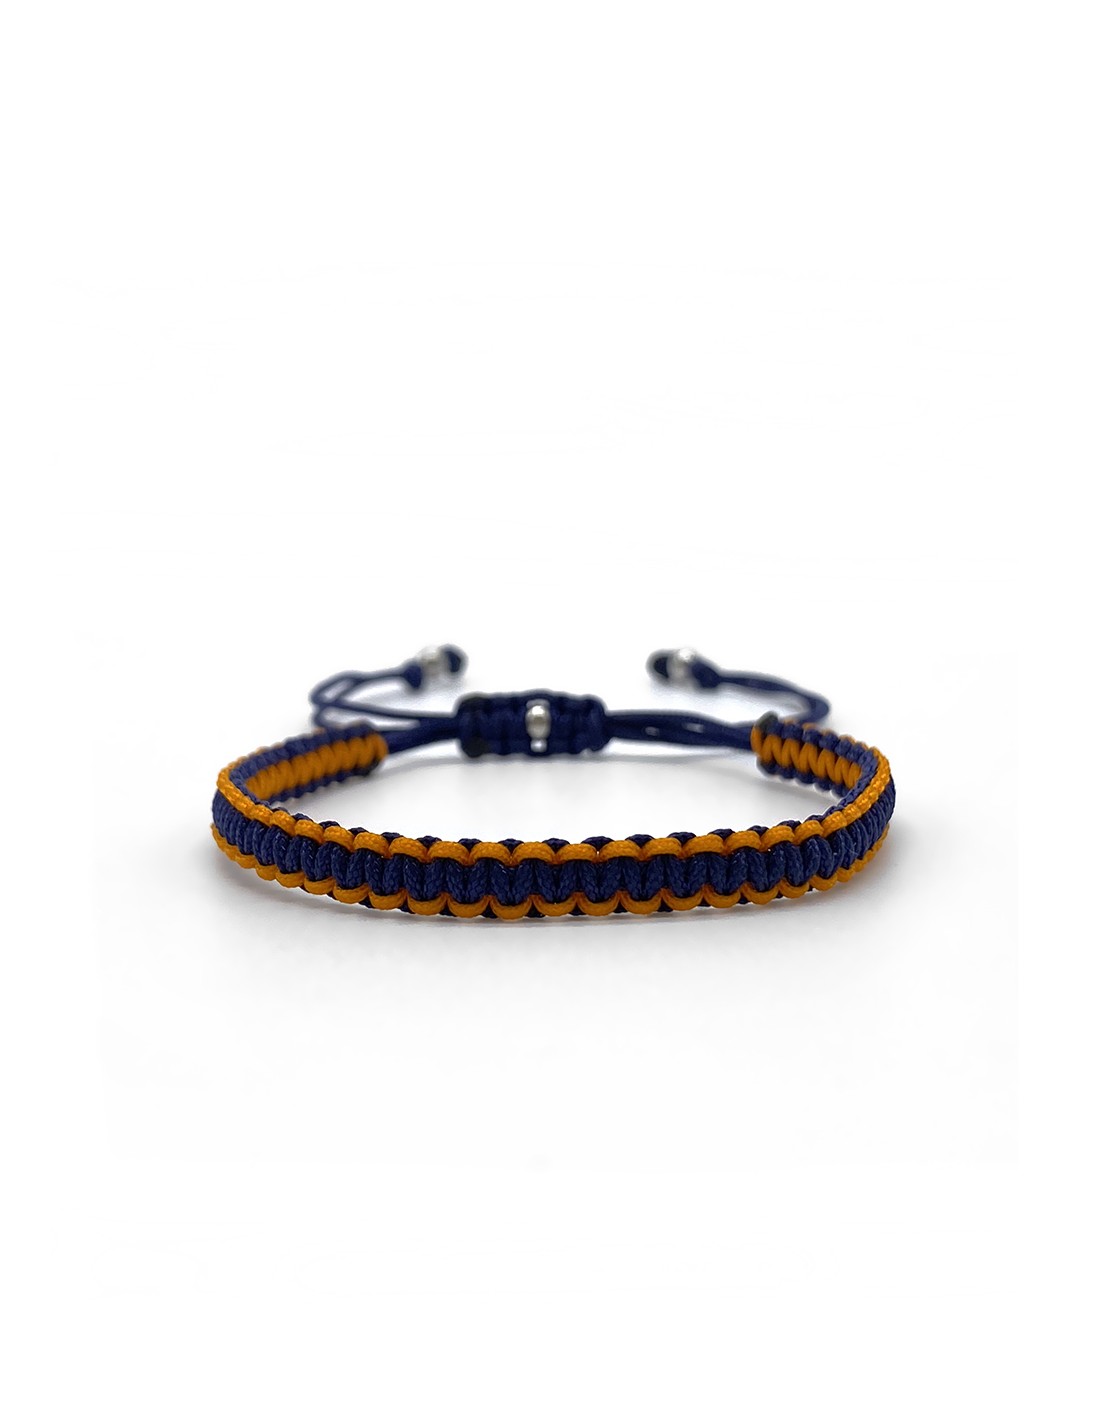 Navy Blue Evil Eye Women's Bracelet Gold Filled 7.5